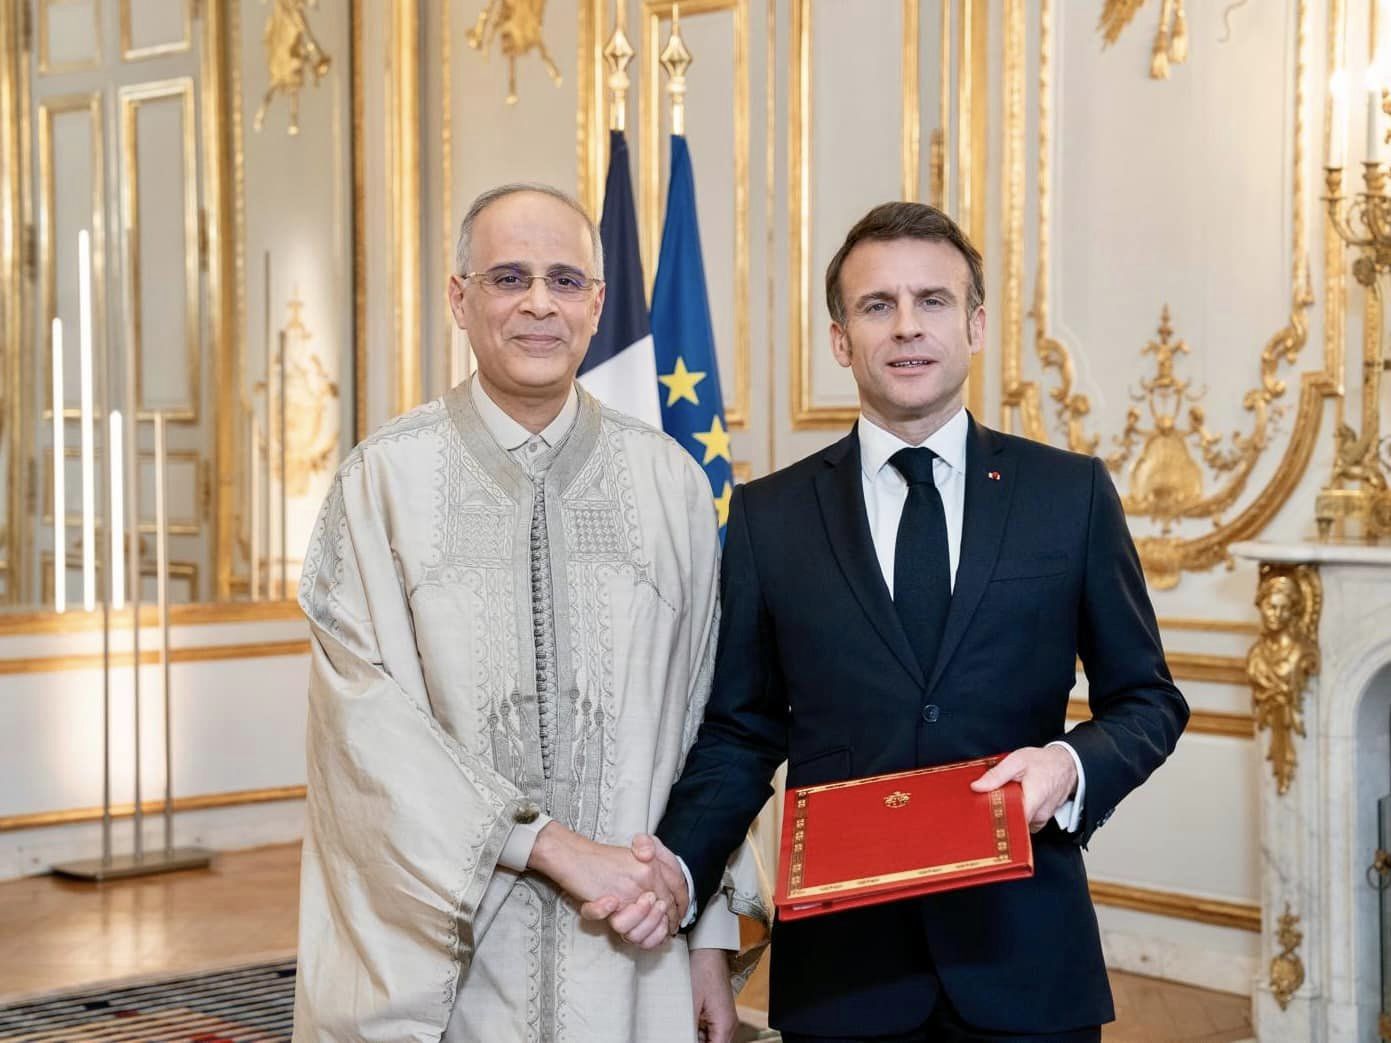 Dhia Khaled, ambassadeur de Tunisie en France, remet ses lettres de créance à Emmanuel Macron